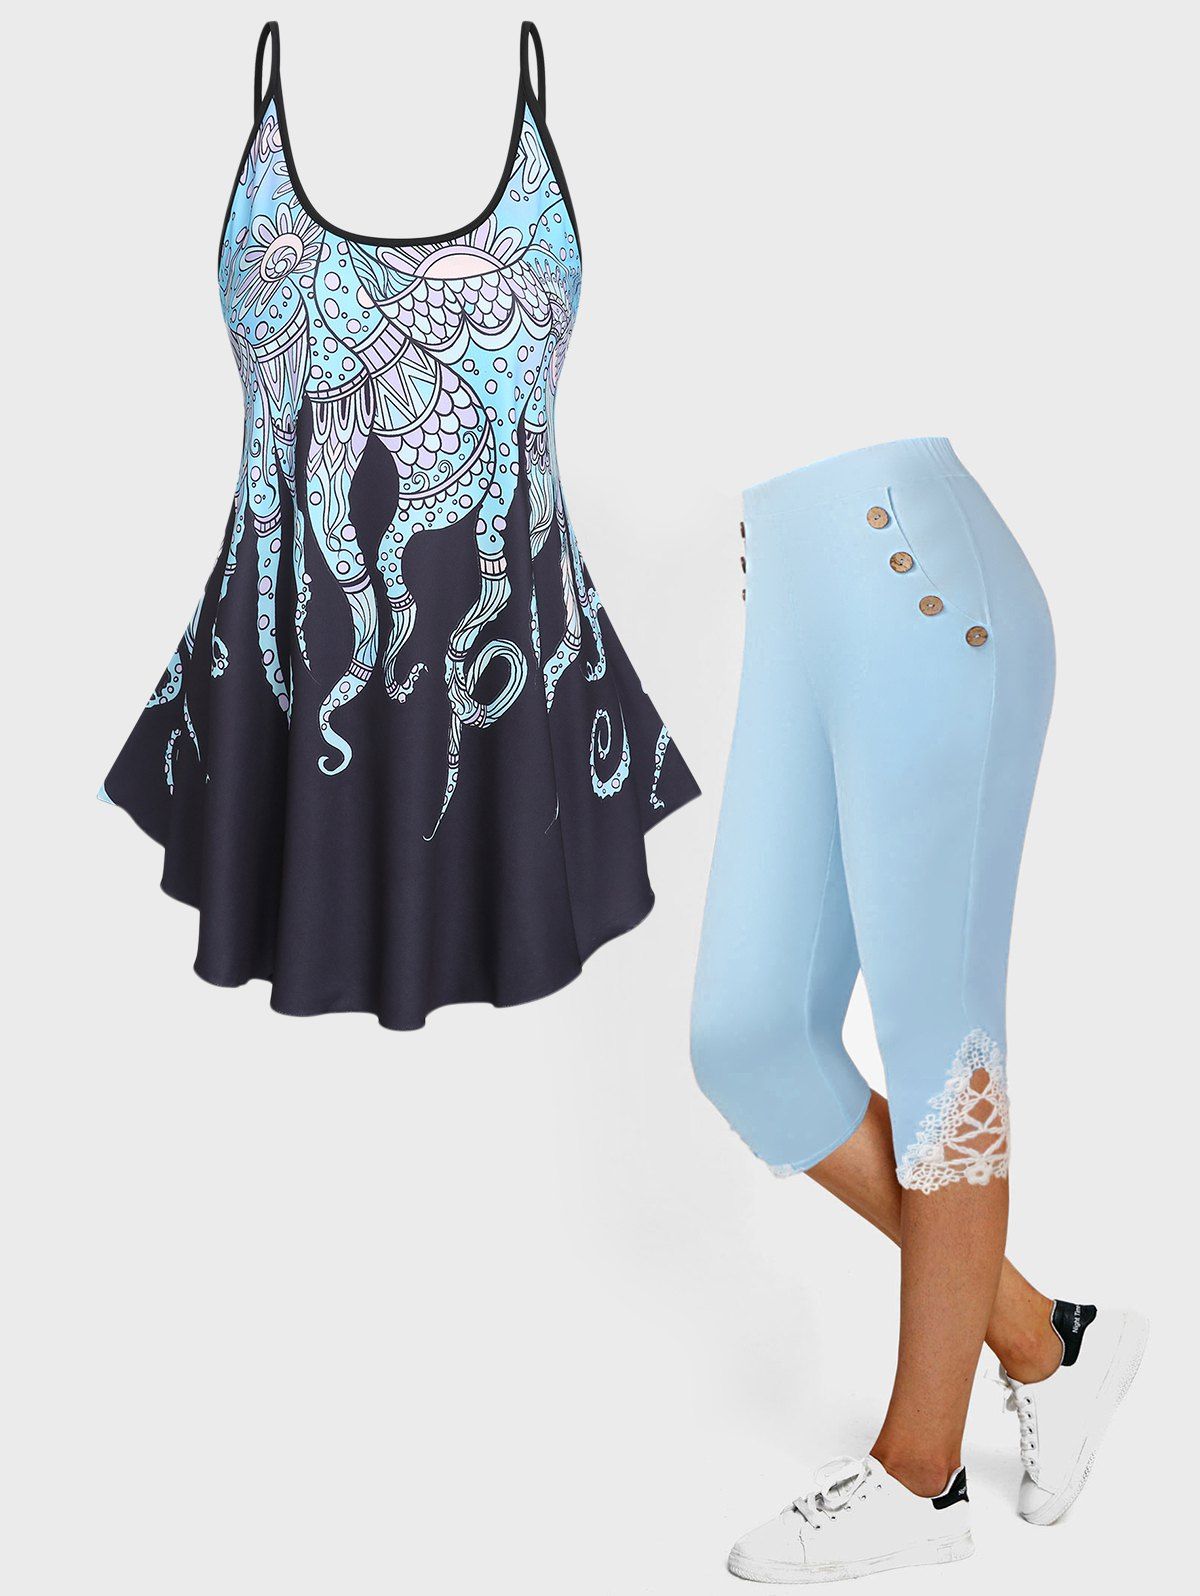 Flutter Hem Octopus Print Tank Top And High Waist Lace Applique Capri Leggings Summer Outfit - LIGHT BLUE S